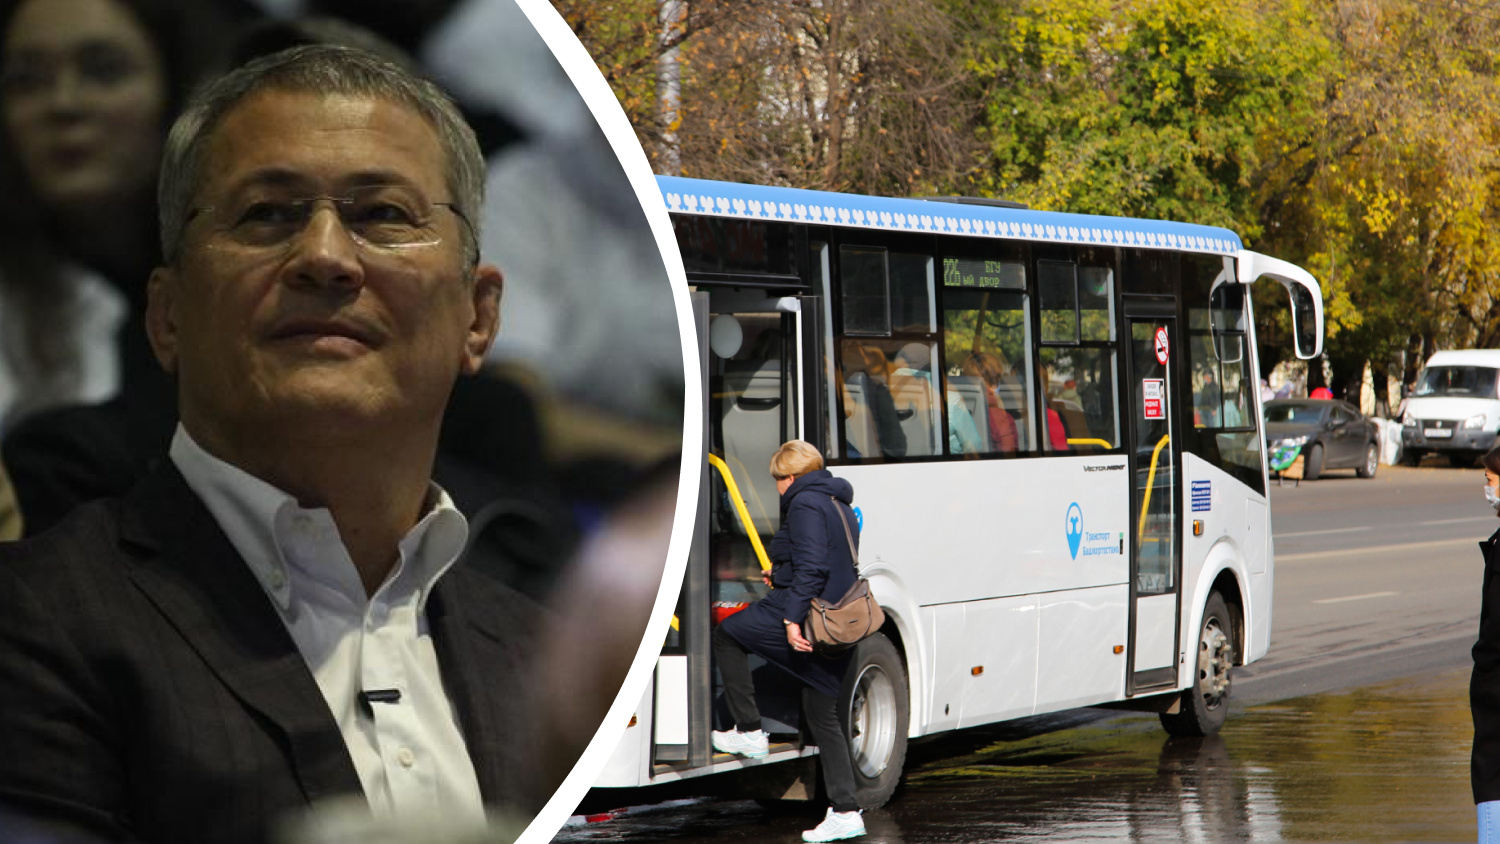 Глава Башкирии похвастался пассажиропотоком в автобусах. <nobr class="_">5 лет</nobr> назад этот показатель был гораздо выше